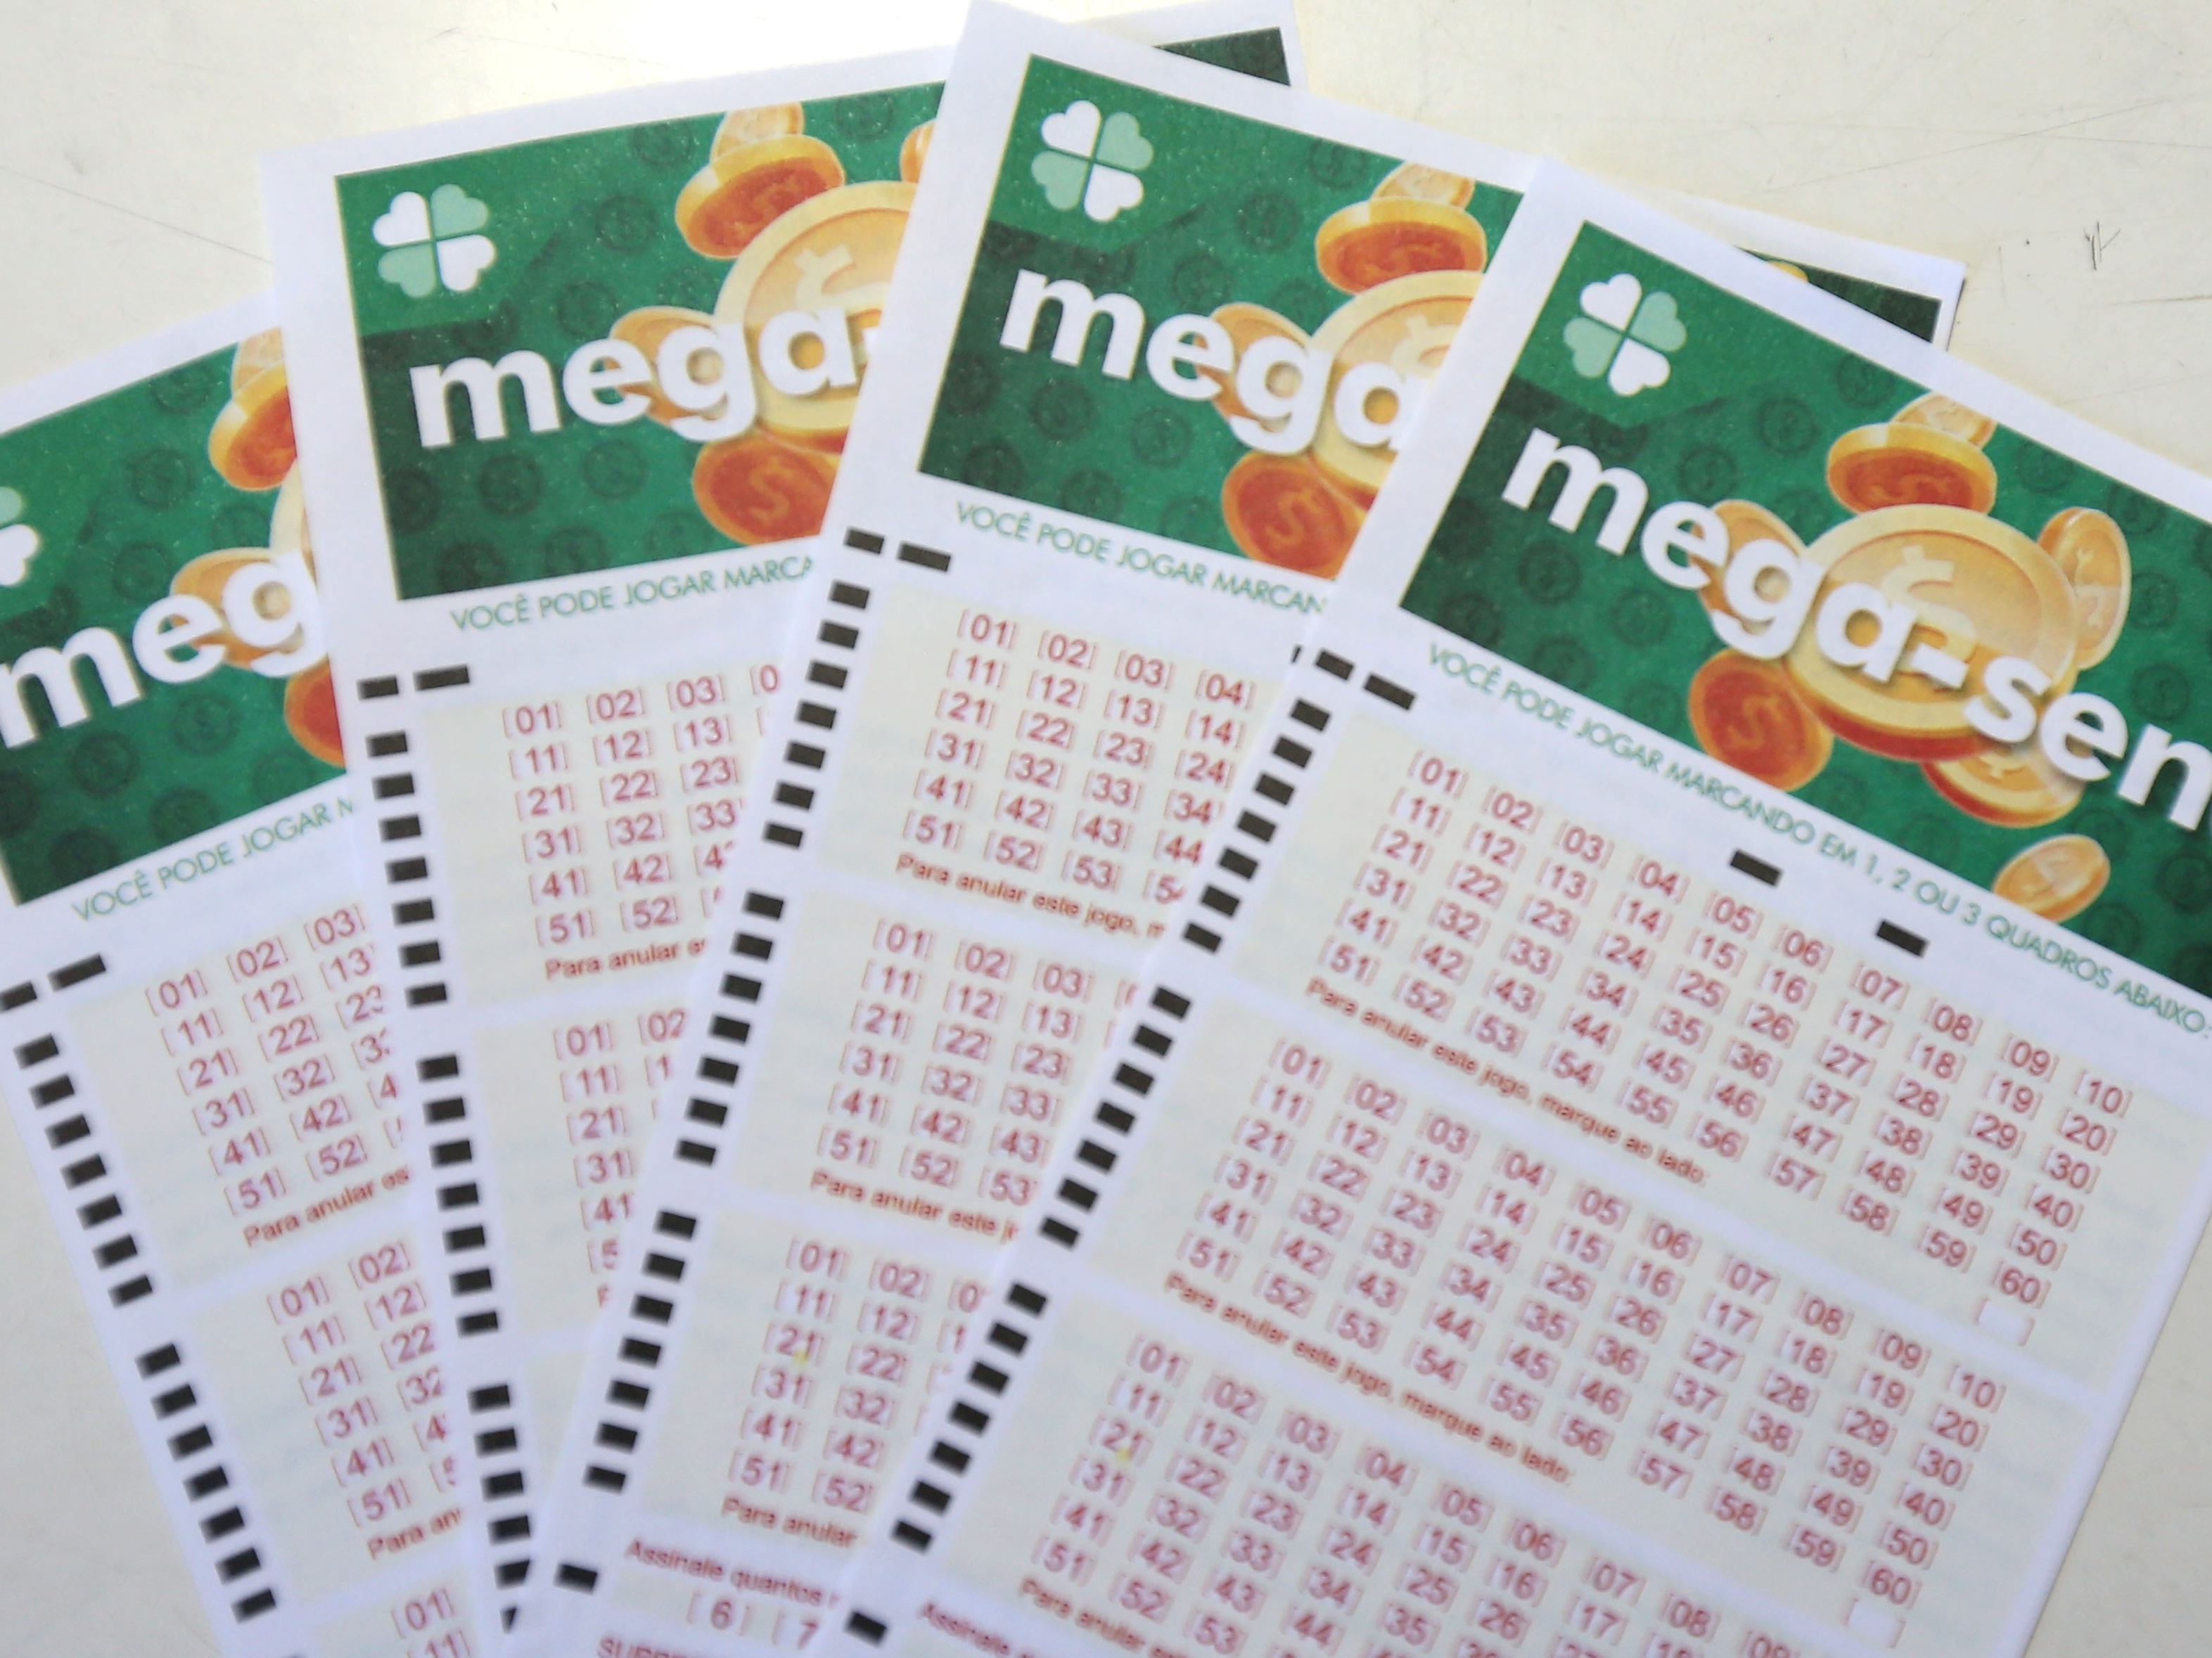 Mega-Sena 2614: 3 apostas cravam números e levam prêmio de R$ 22 mi